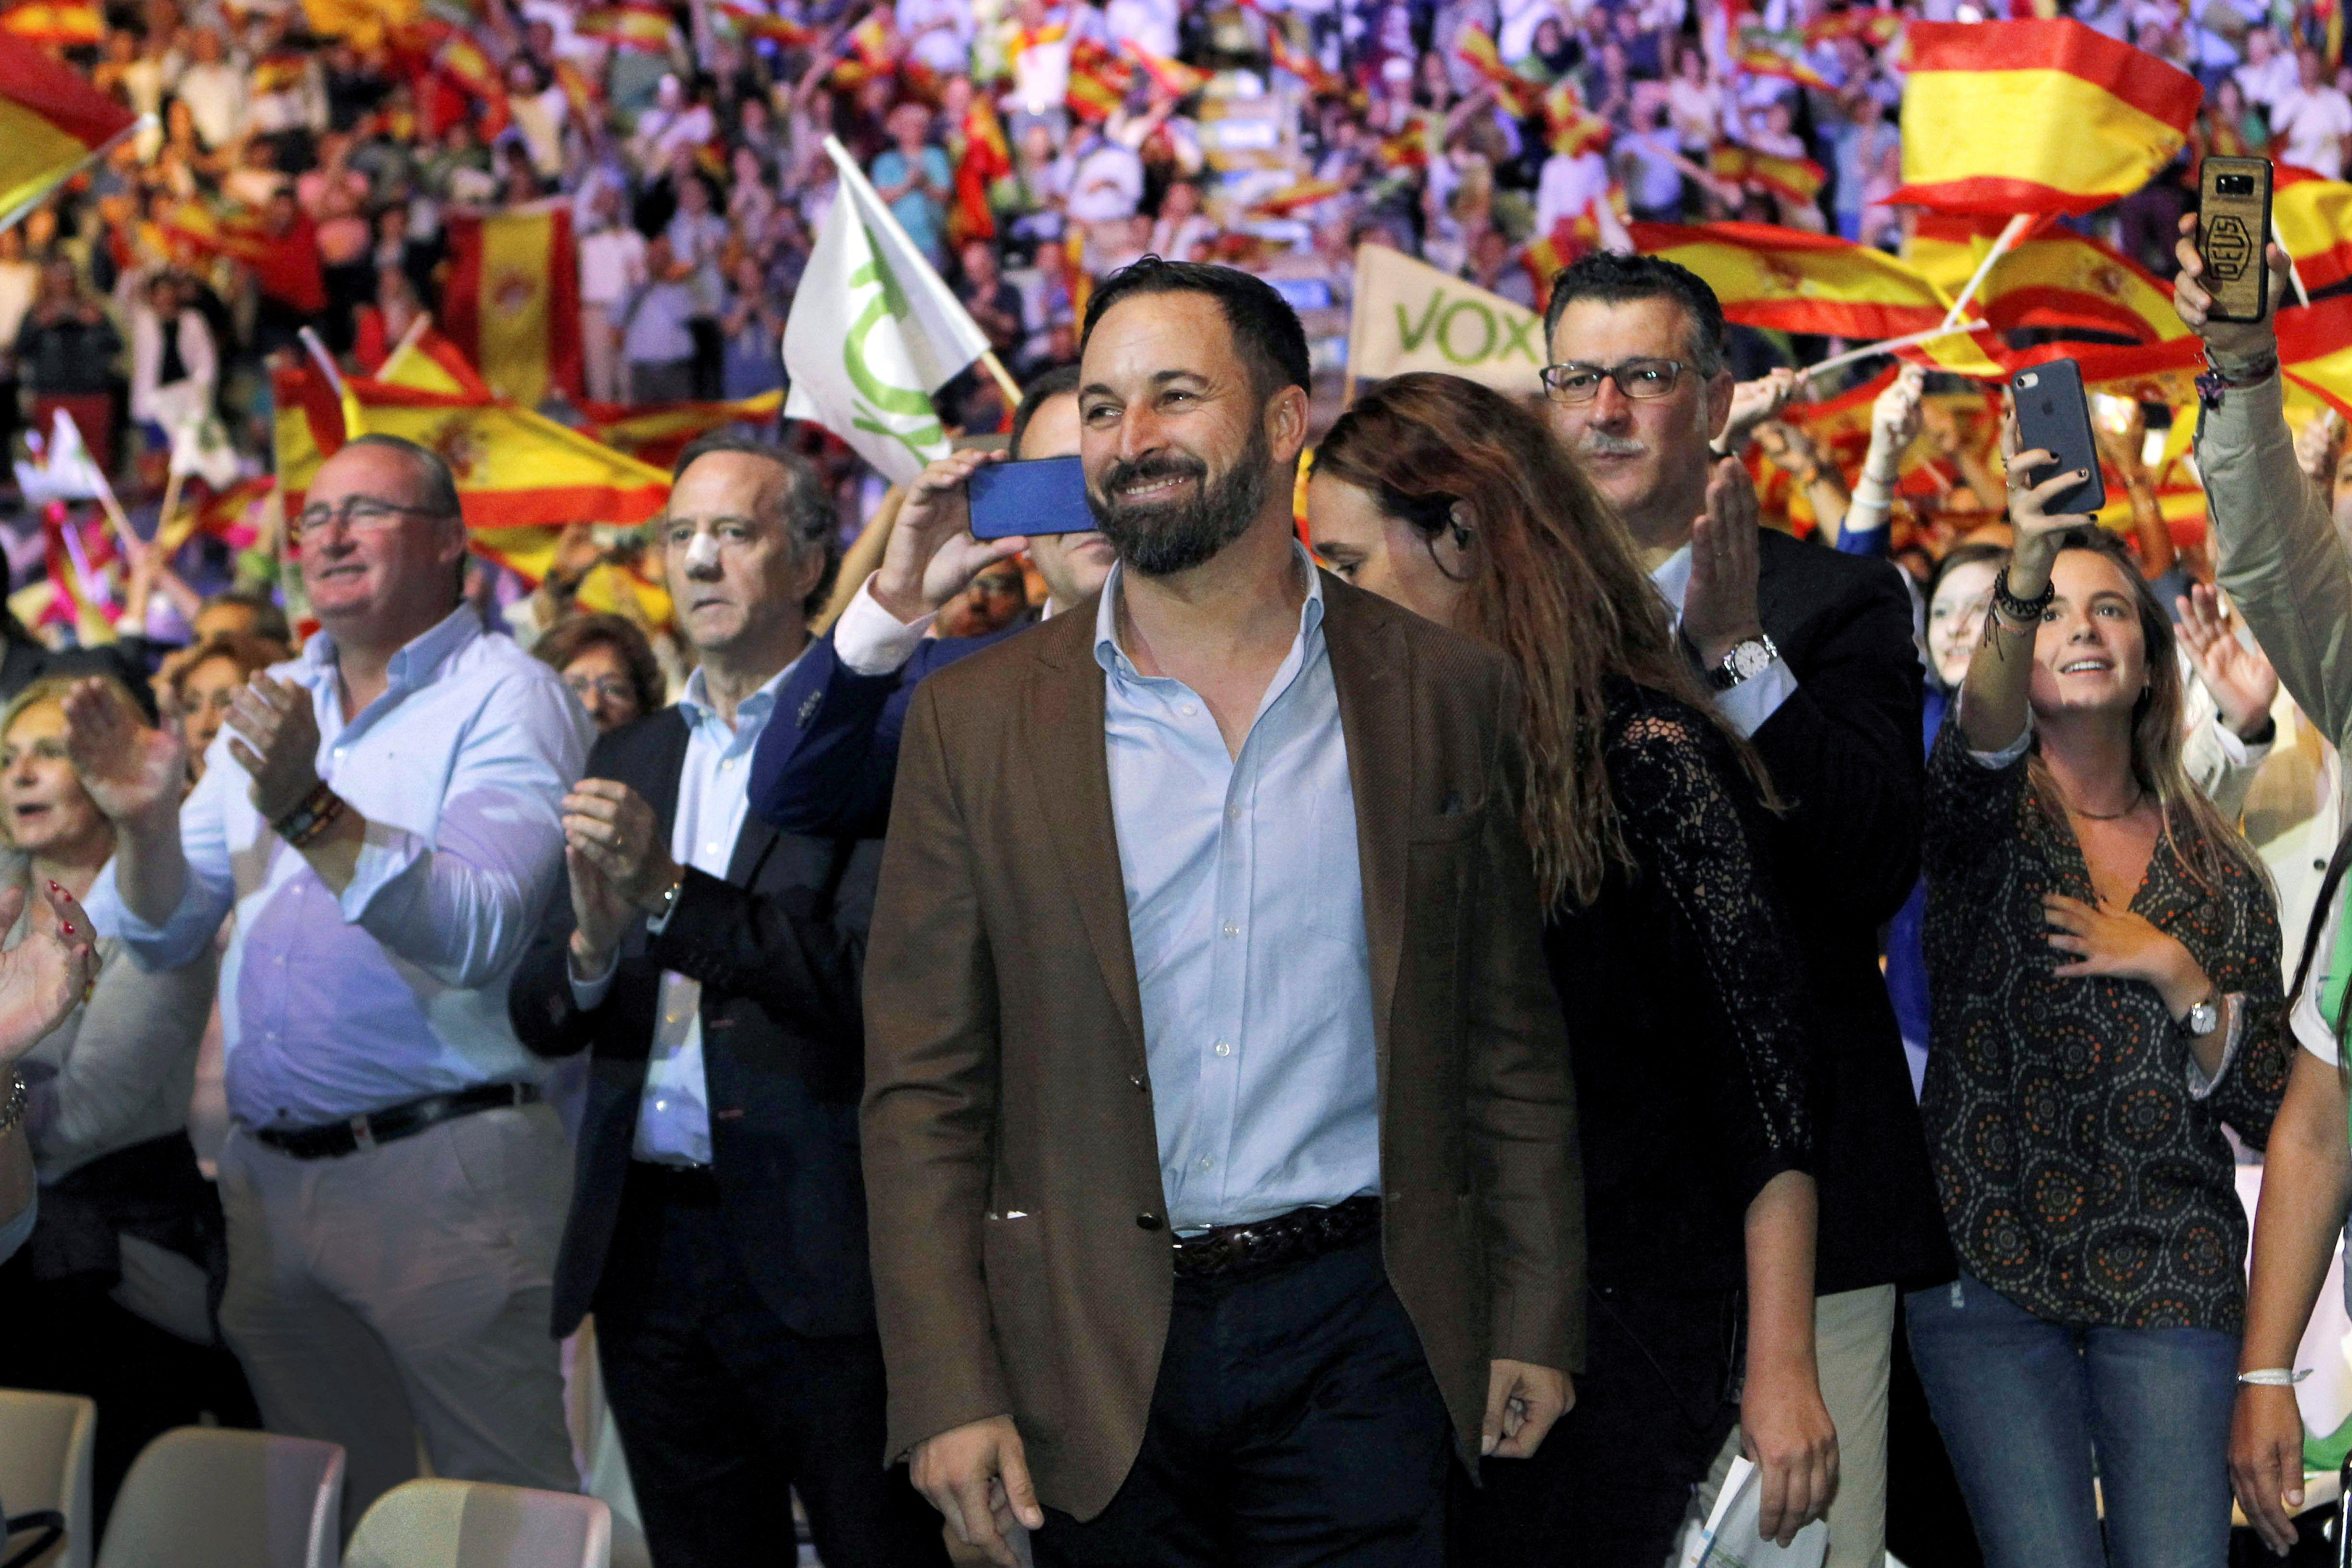 El presidente de Vox, Santiago Abascal, durante un acto en el Palacio de Vistalegre de Madrid / CG